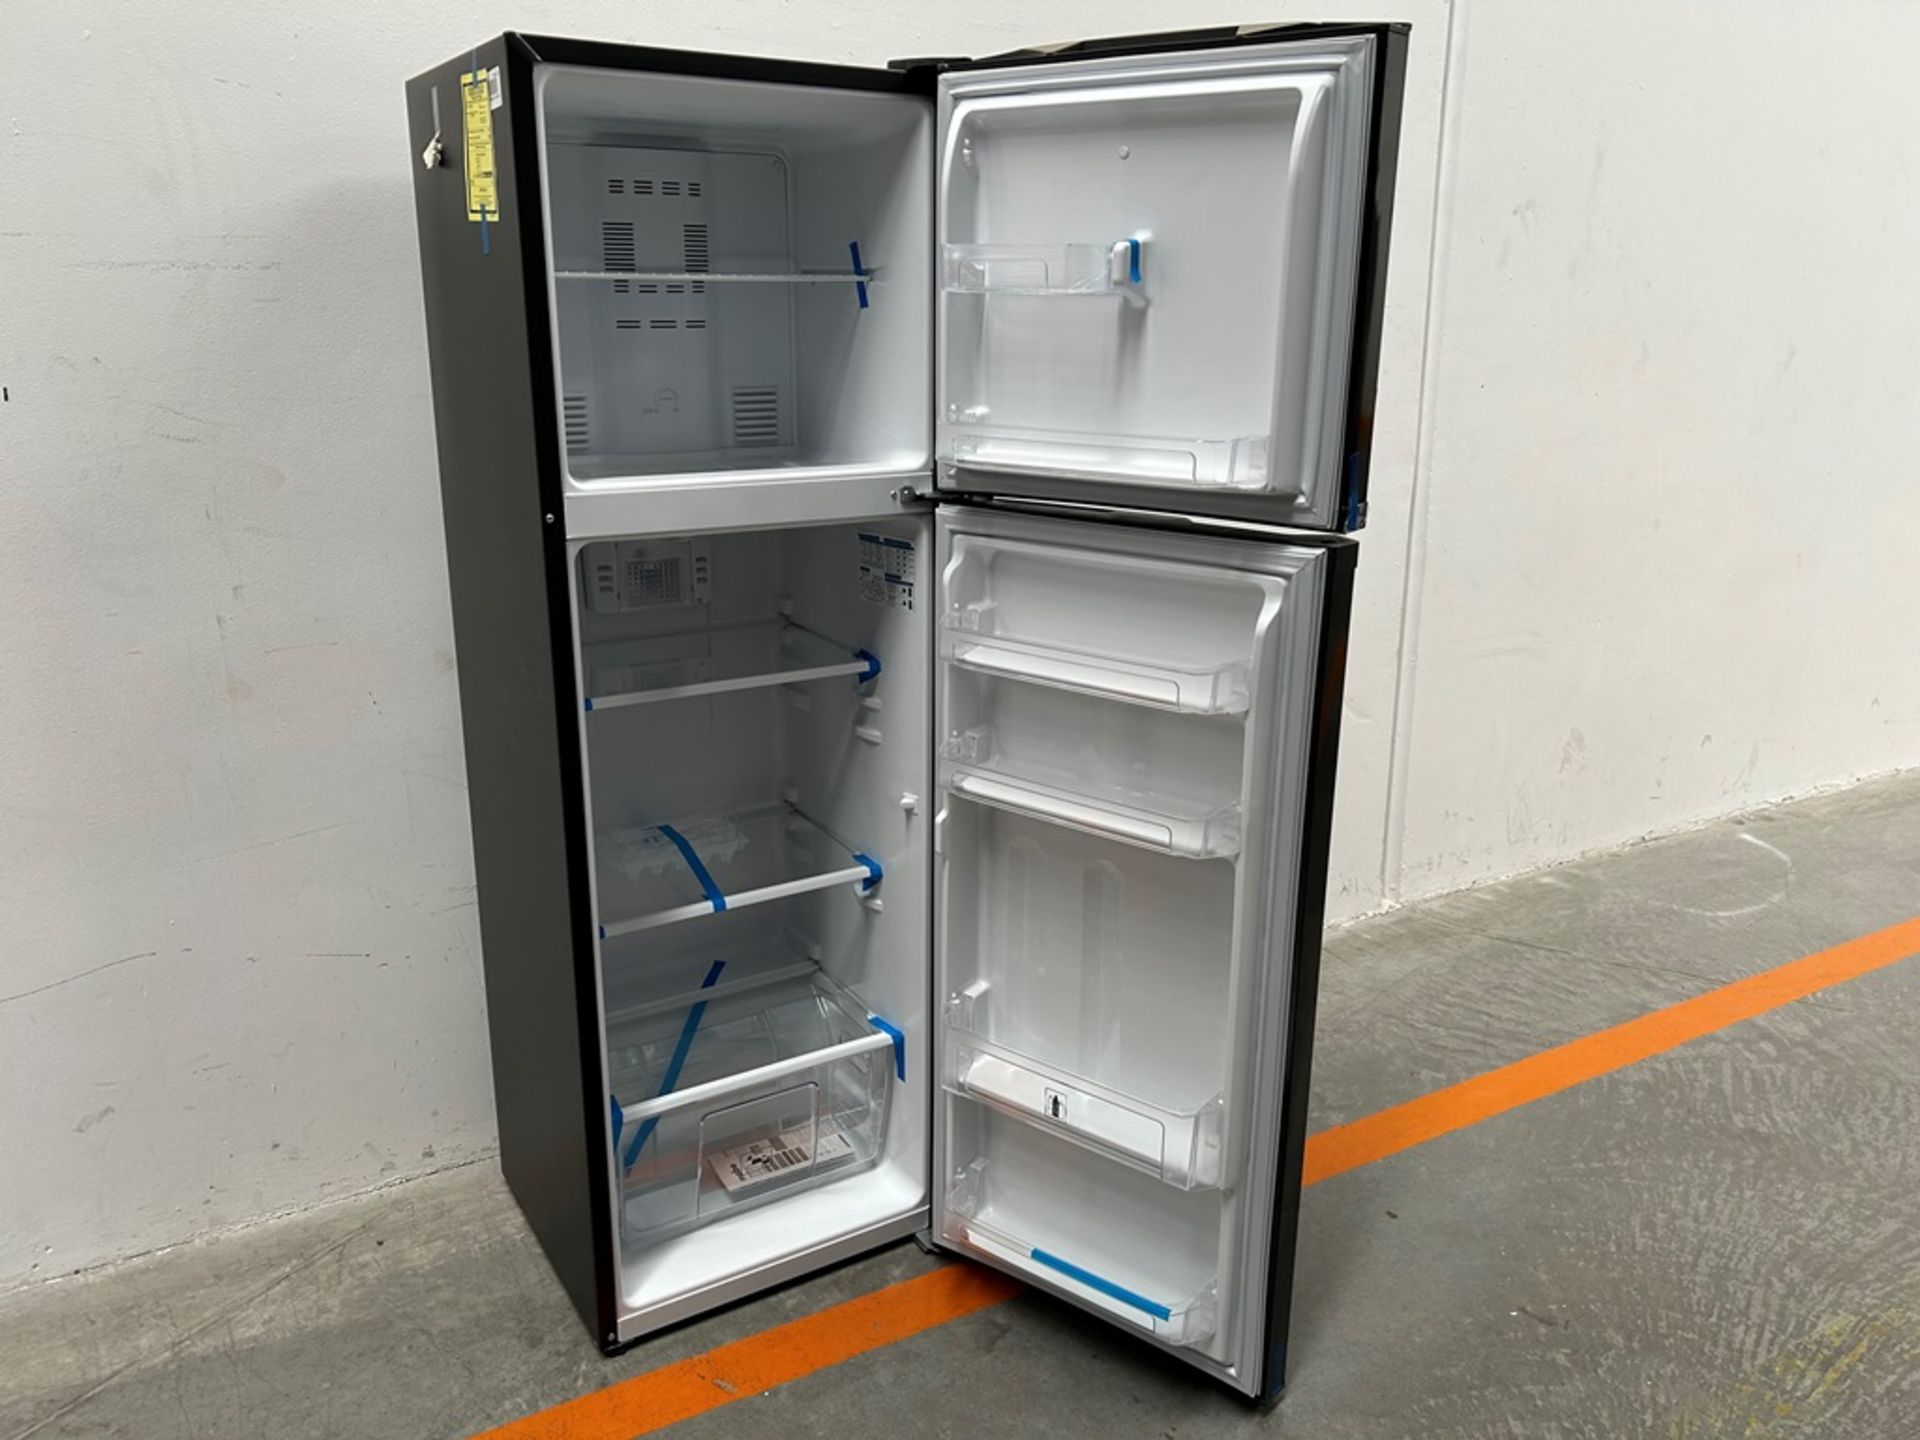 Lote de 2 refrigeradores contiene: 1 refrigerador Marca MABE, Modelo RMA250PVMRP0, Serie 13859, Col - Image 9 of 18